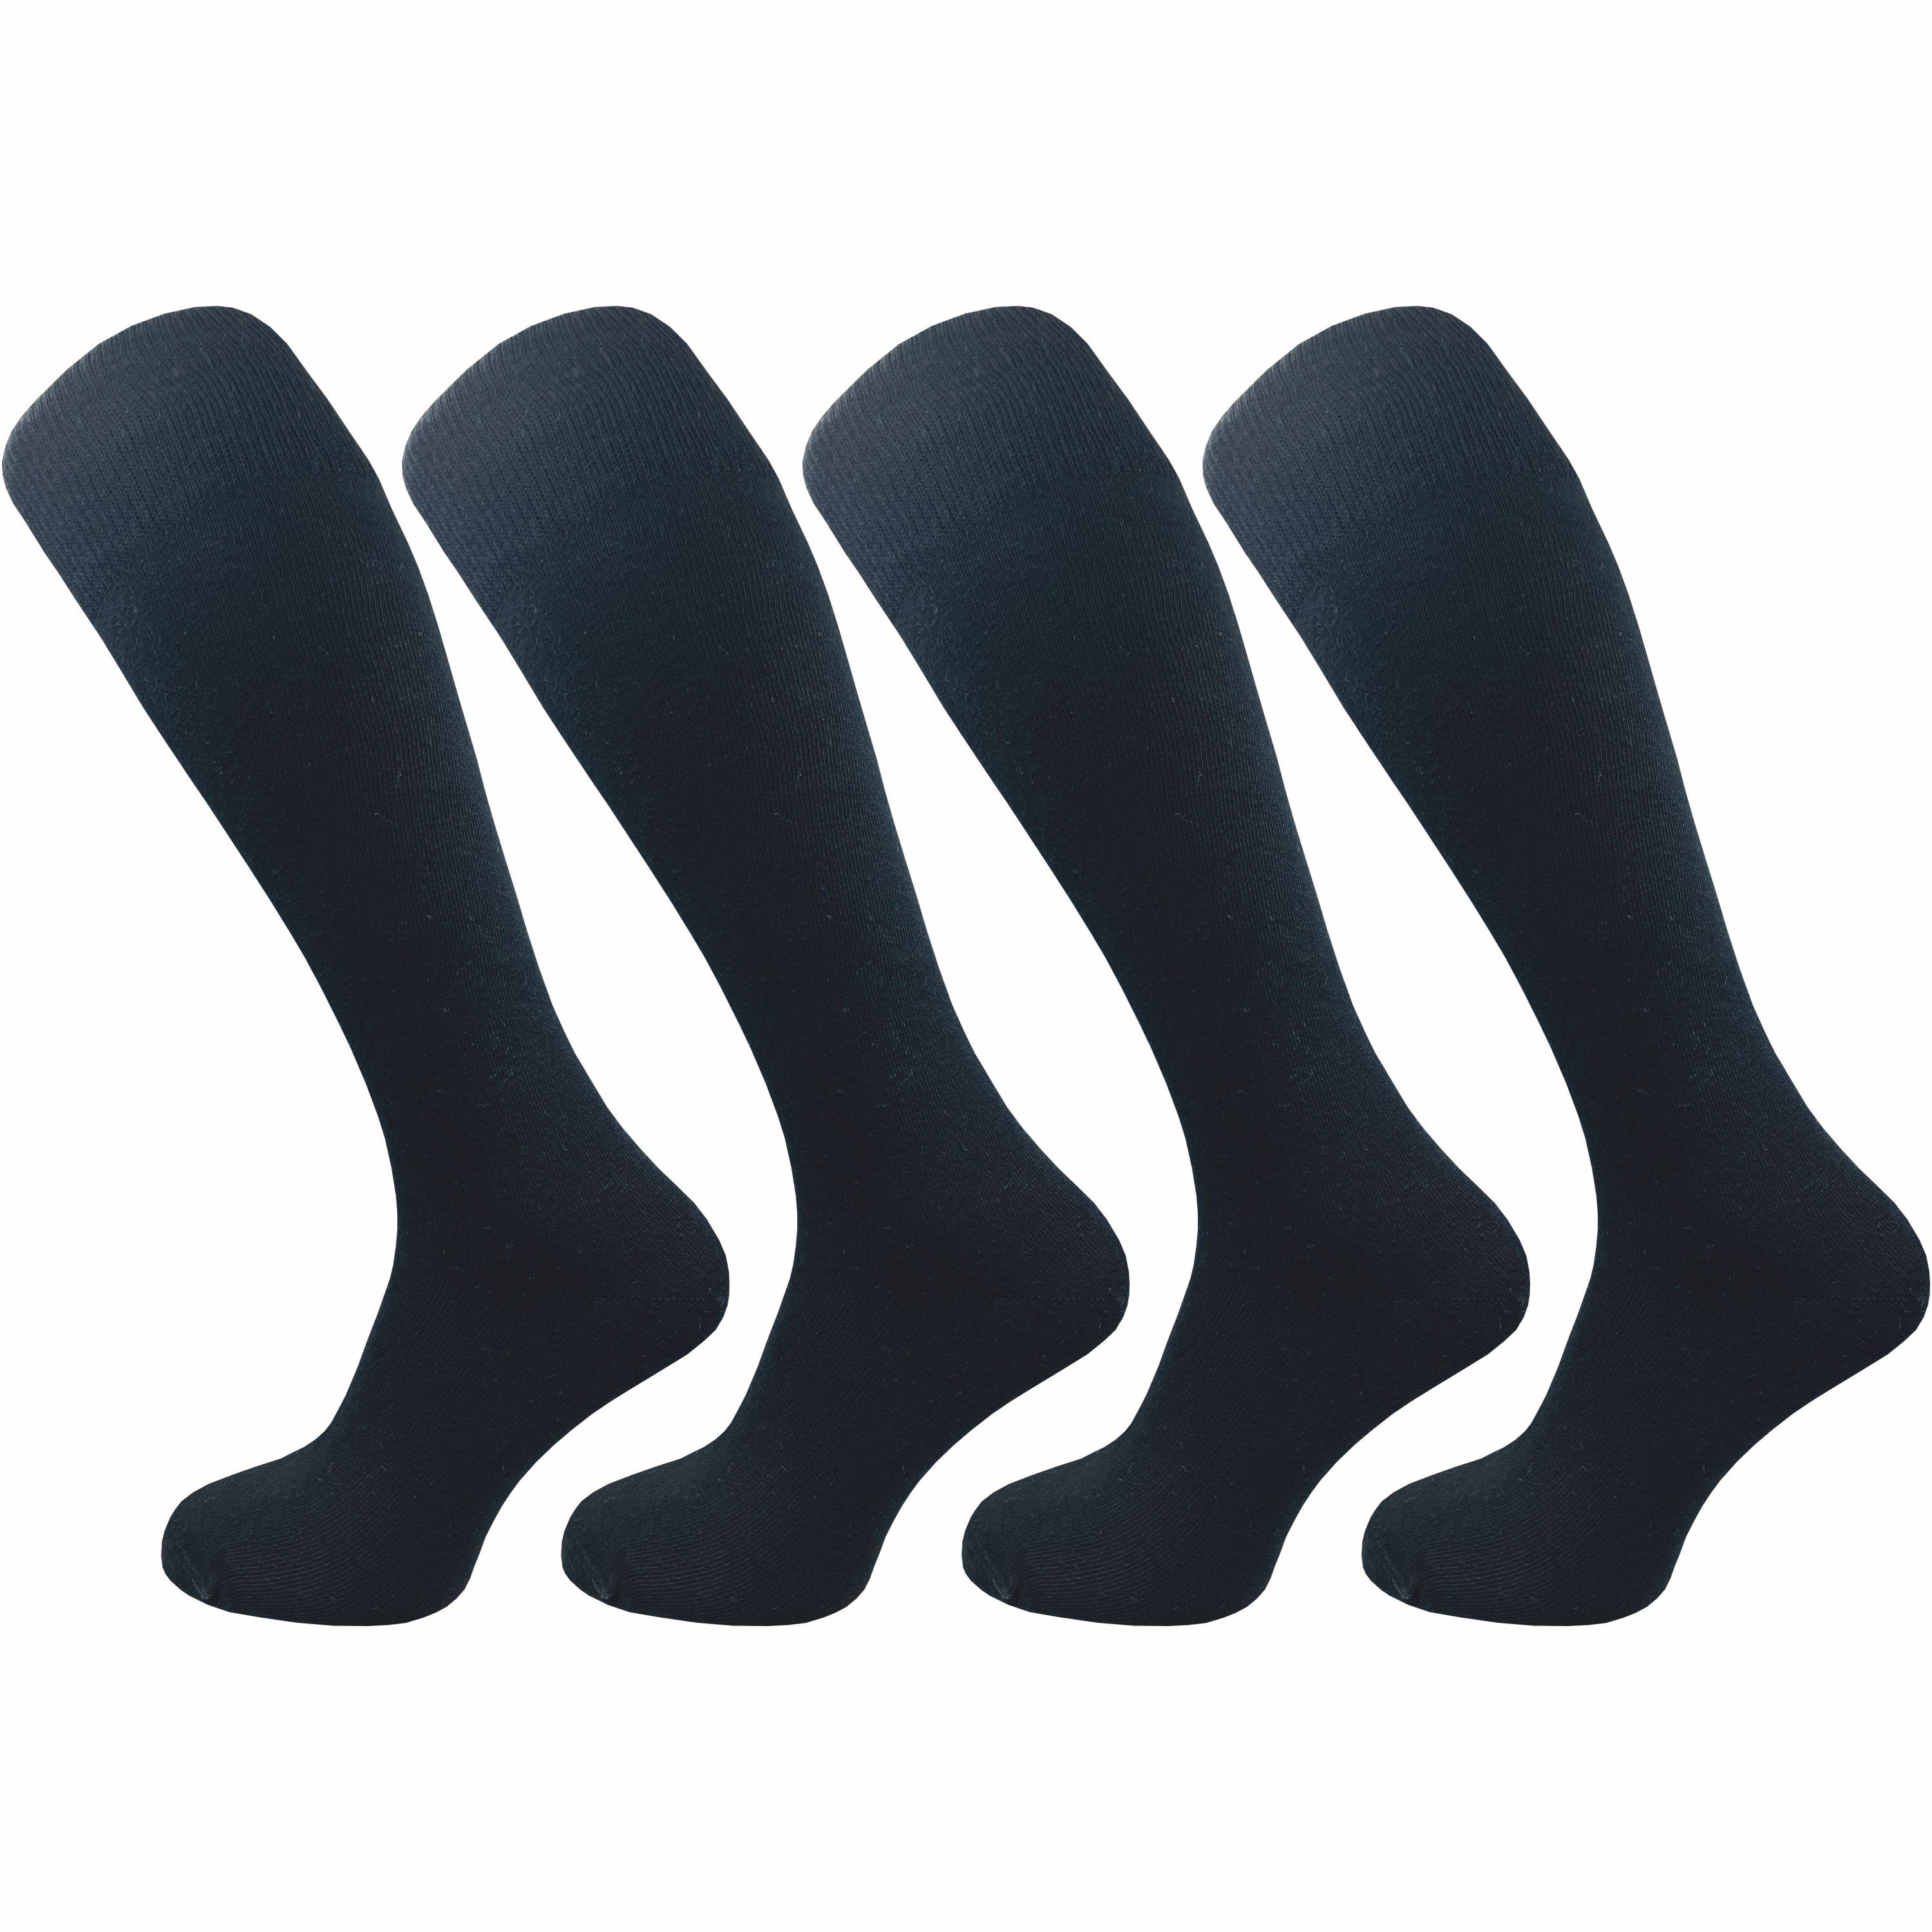 GAWILO Kniestrümpfe für Herren aus Baumwolle - extra weich & ohne drückende Naht (4 Paar) Lange Socken mit speziellem Komfortbund, der nicht einschneidet schwarz